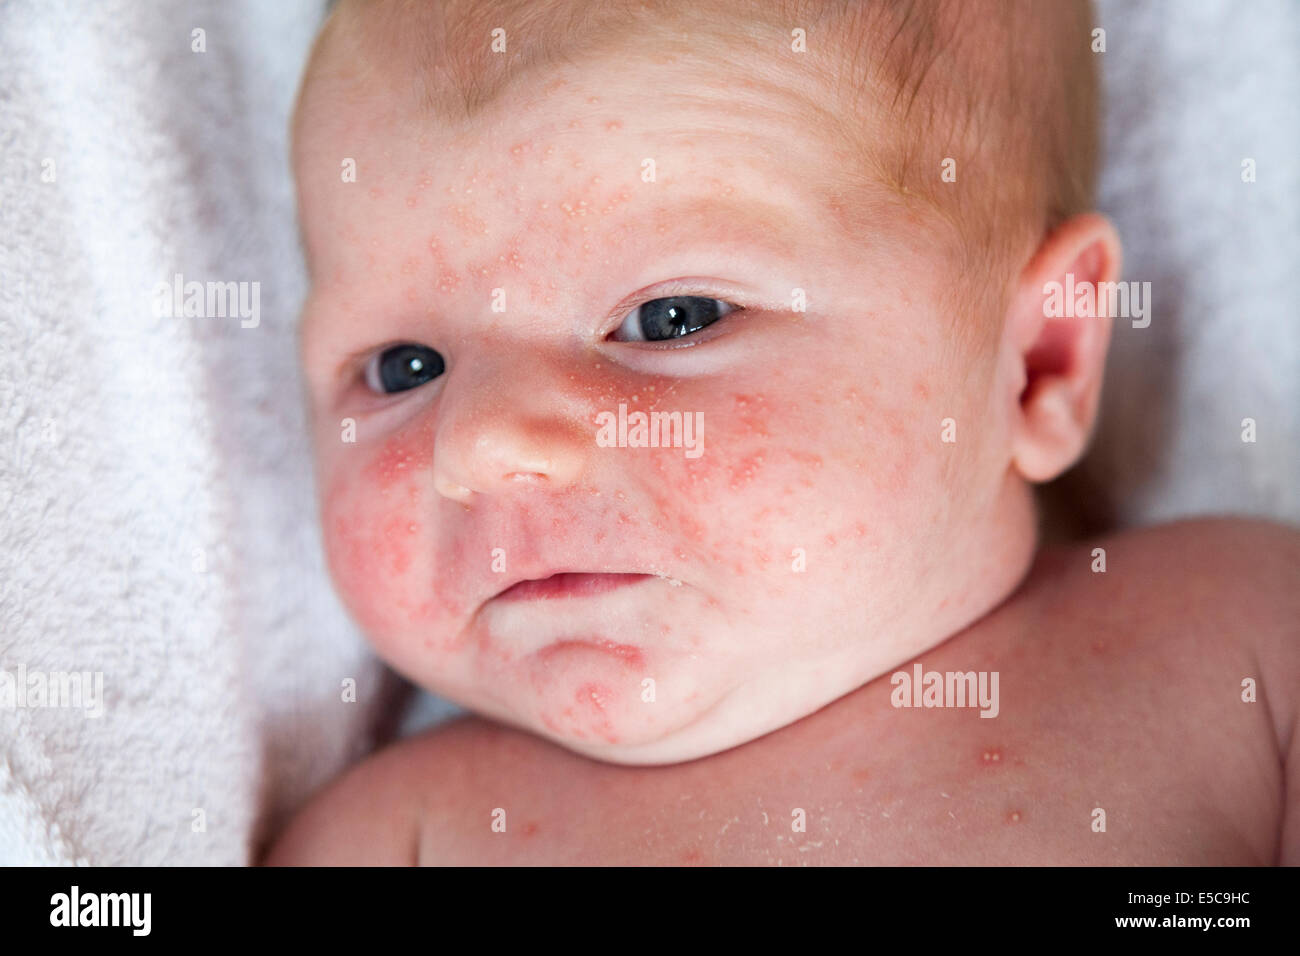 Deux semaine avec - probablement - bébé nouveau-né ou d'acné Neonatorum Toxicum Érythème ' ' ETN ; arrive peu après la naissance dans de nombreux cas Banque D'Images